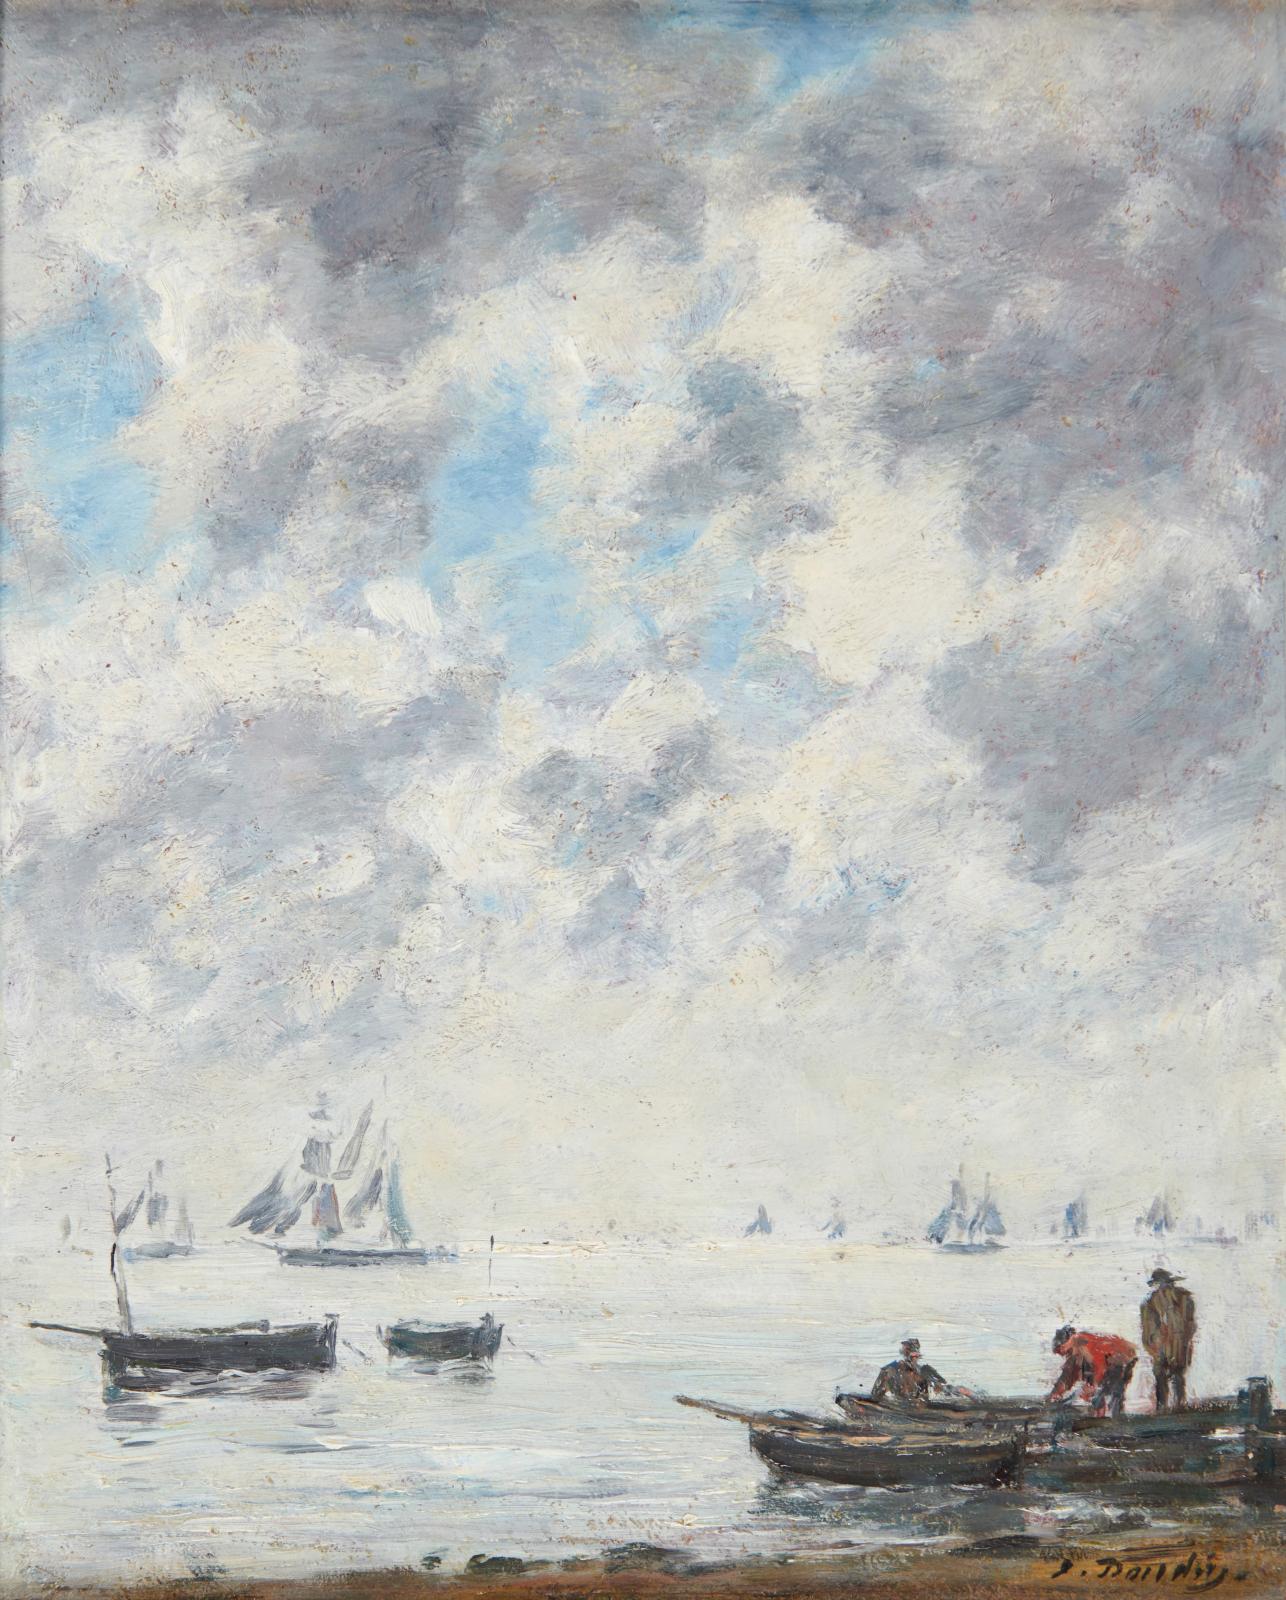 L’art du grand Eugène Boudin (1824-1898) était aussi à portée avec cette Marine, soleil couchant, une huile sur panneau brossée vers 1885-